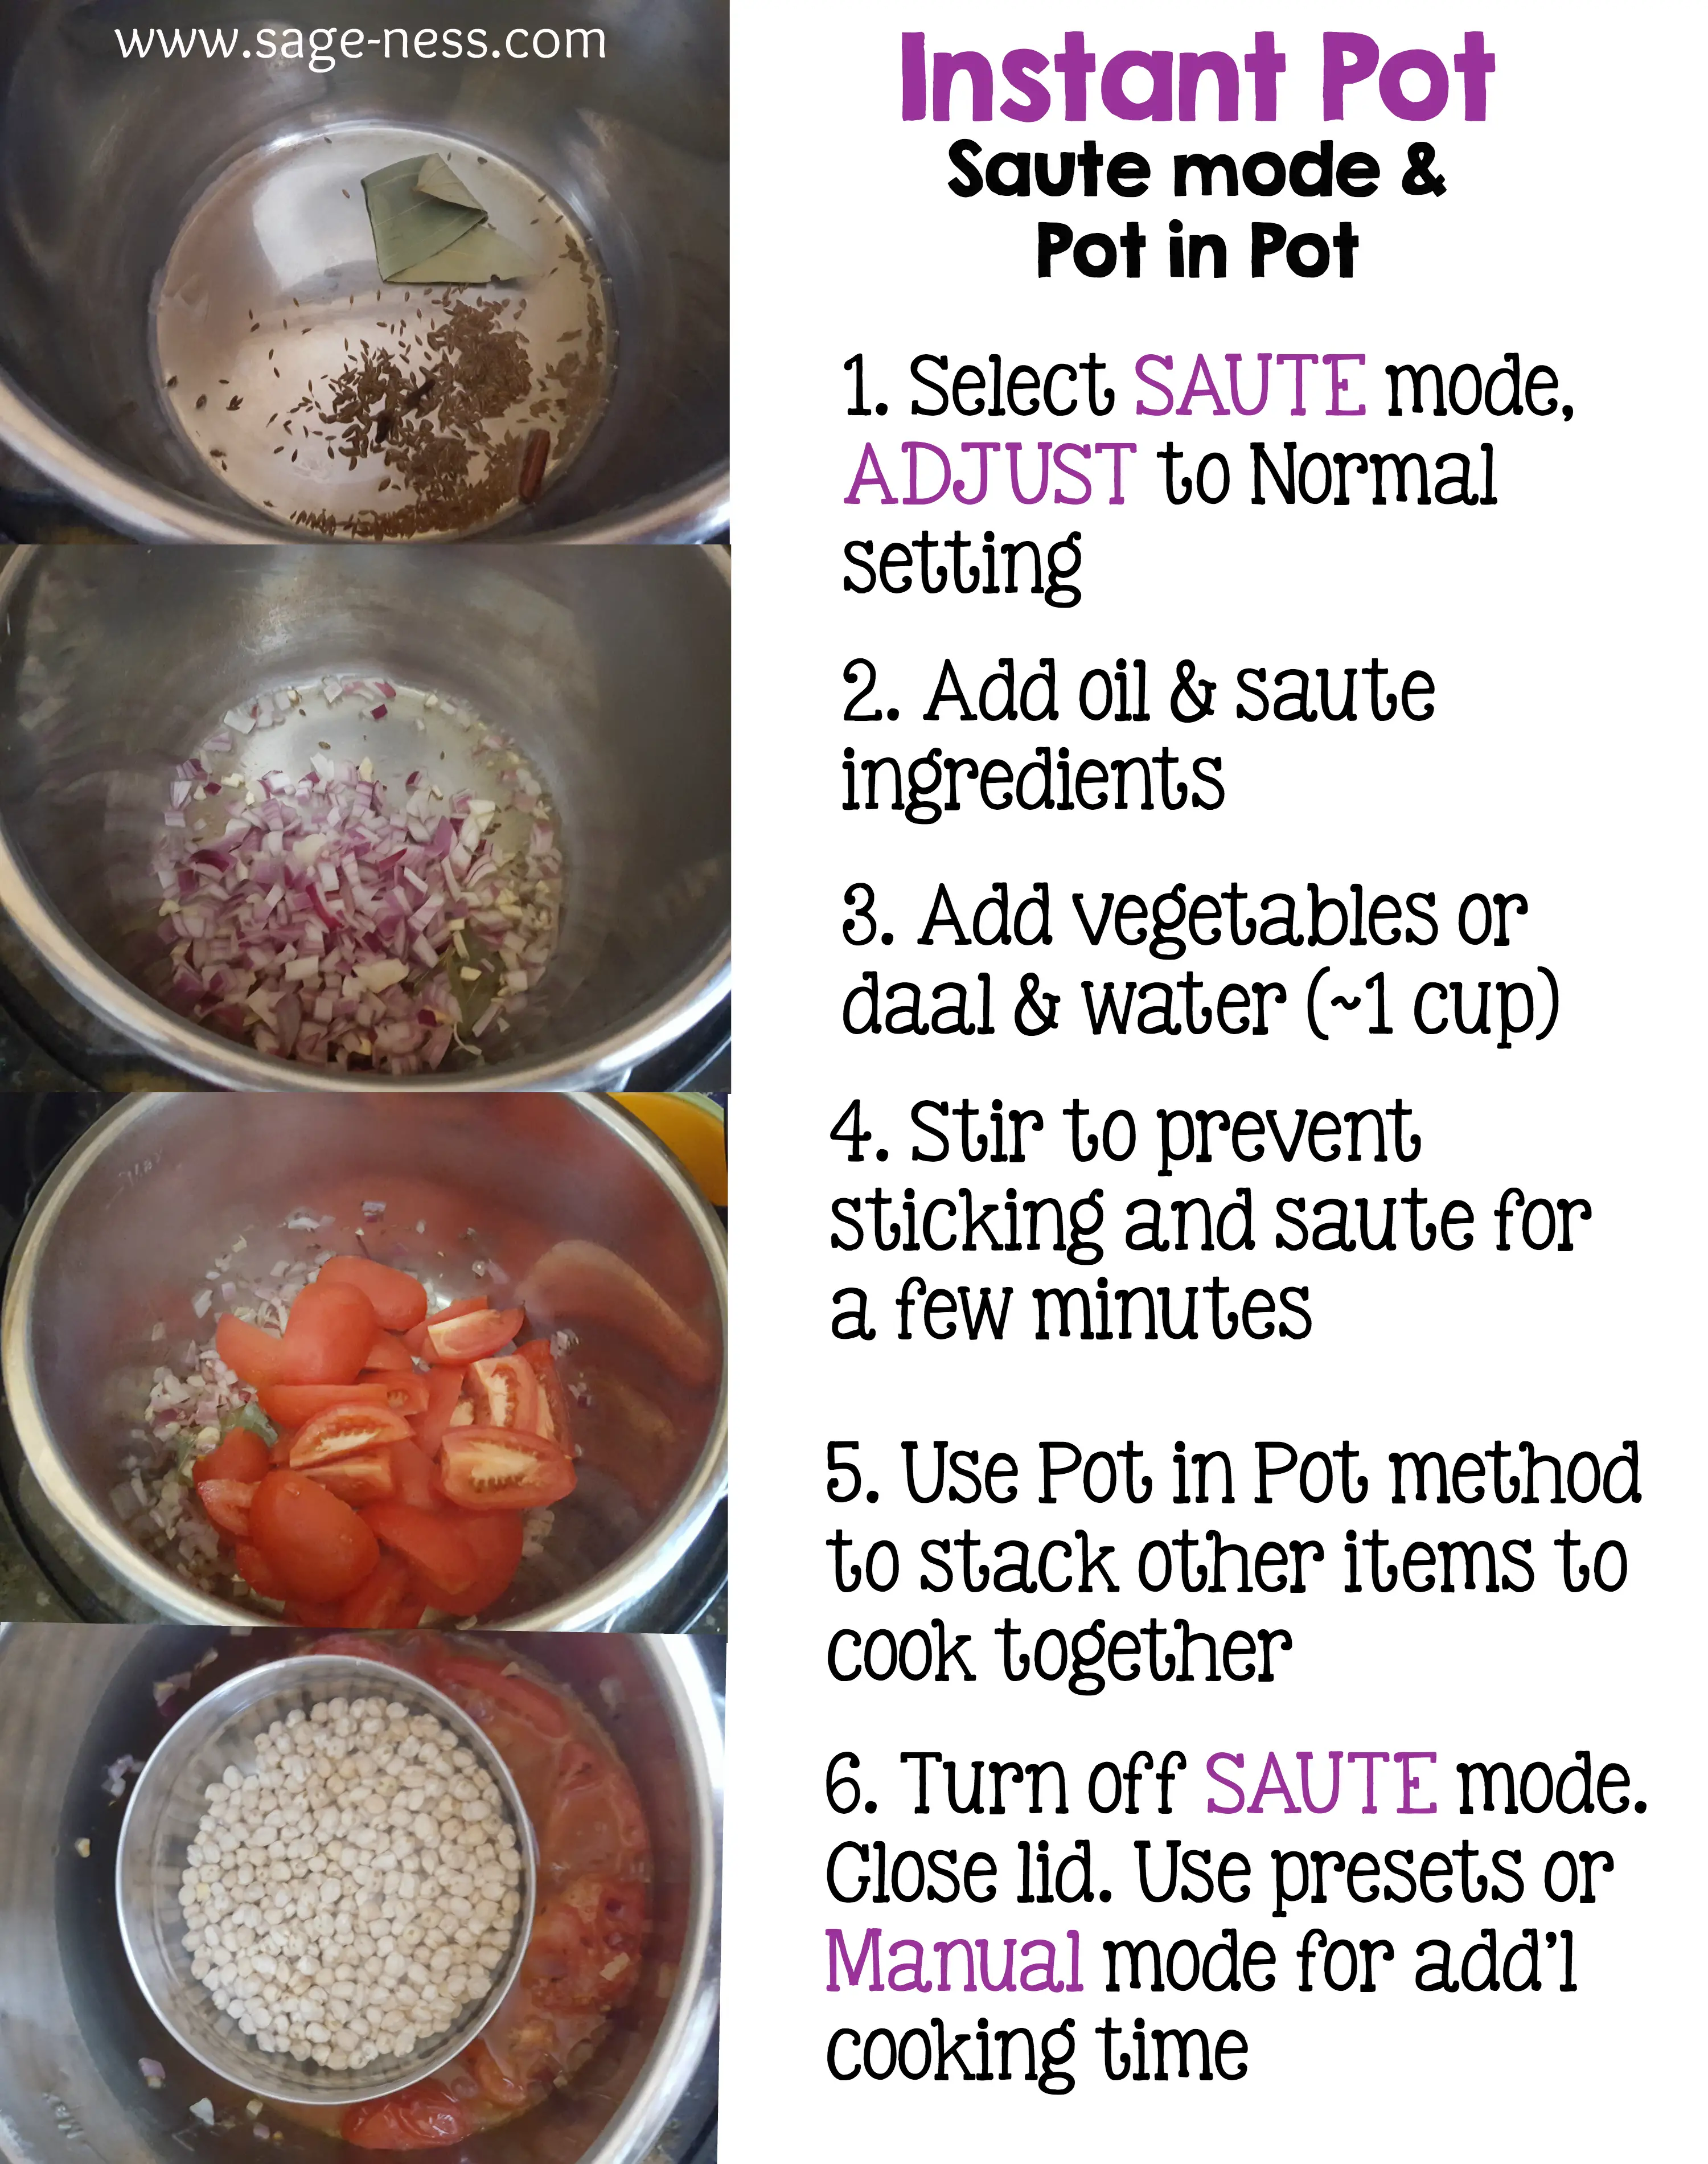 Instant Pot Sauté Mode for Indian food